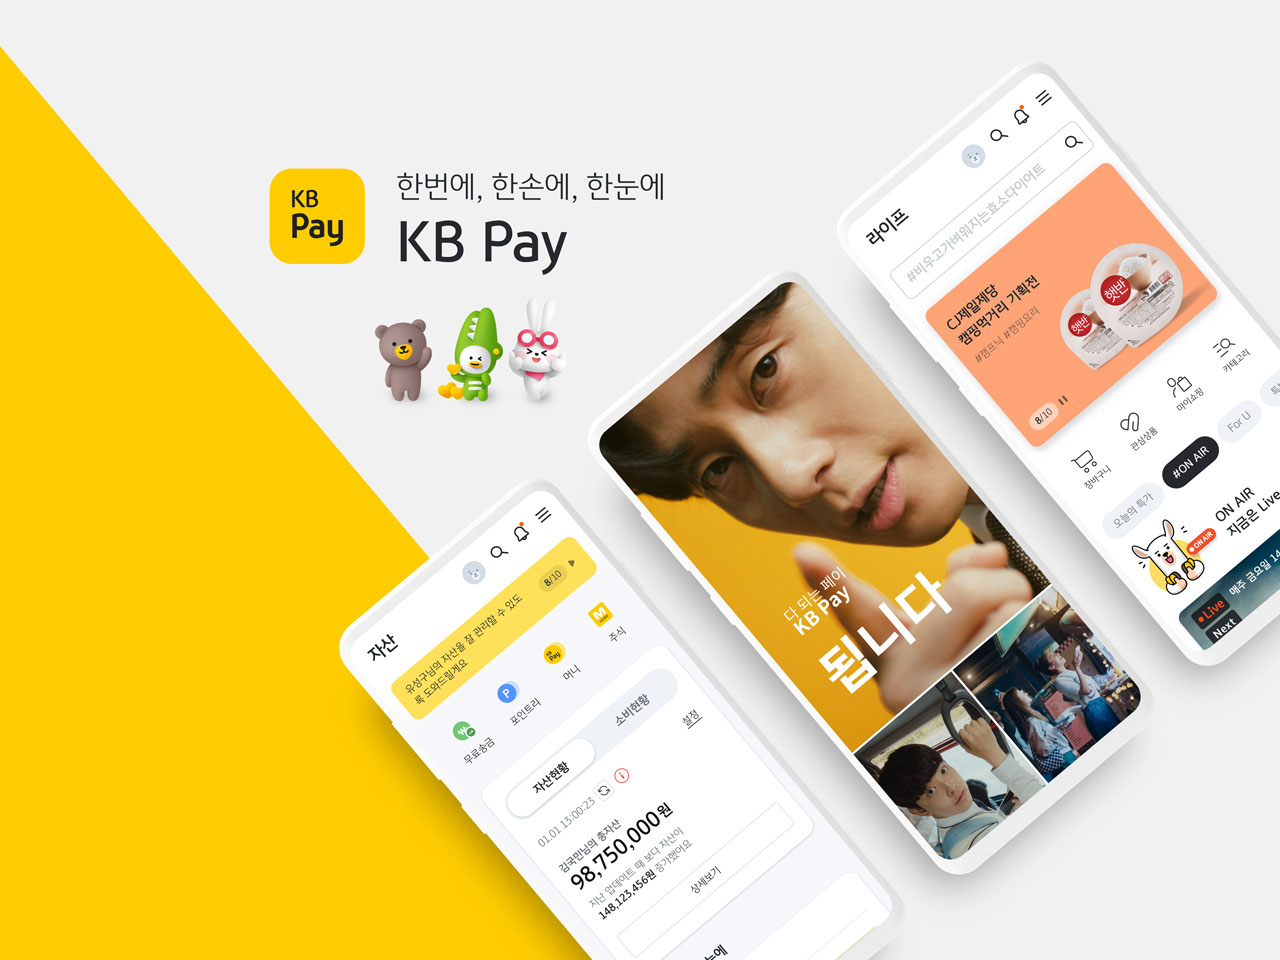 Foto KB Pay berhasil menjangkau 10 juta pelanggan